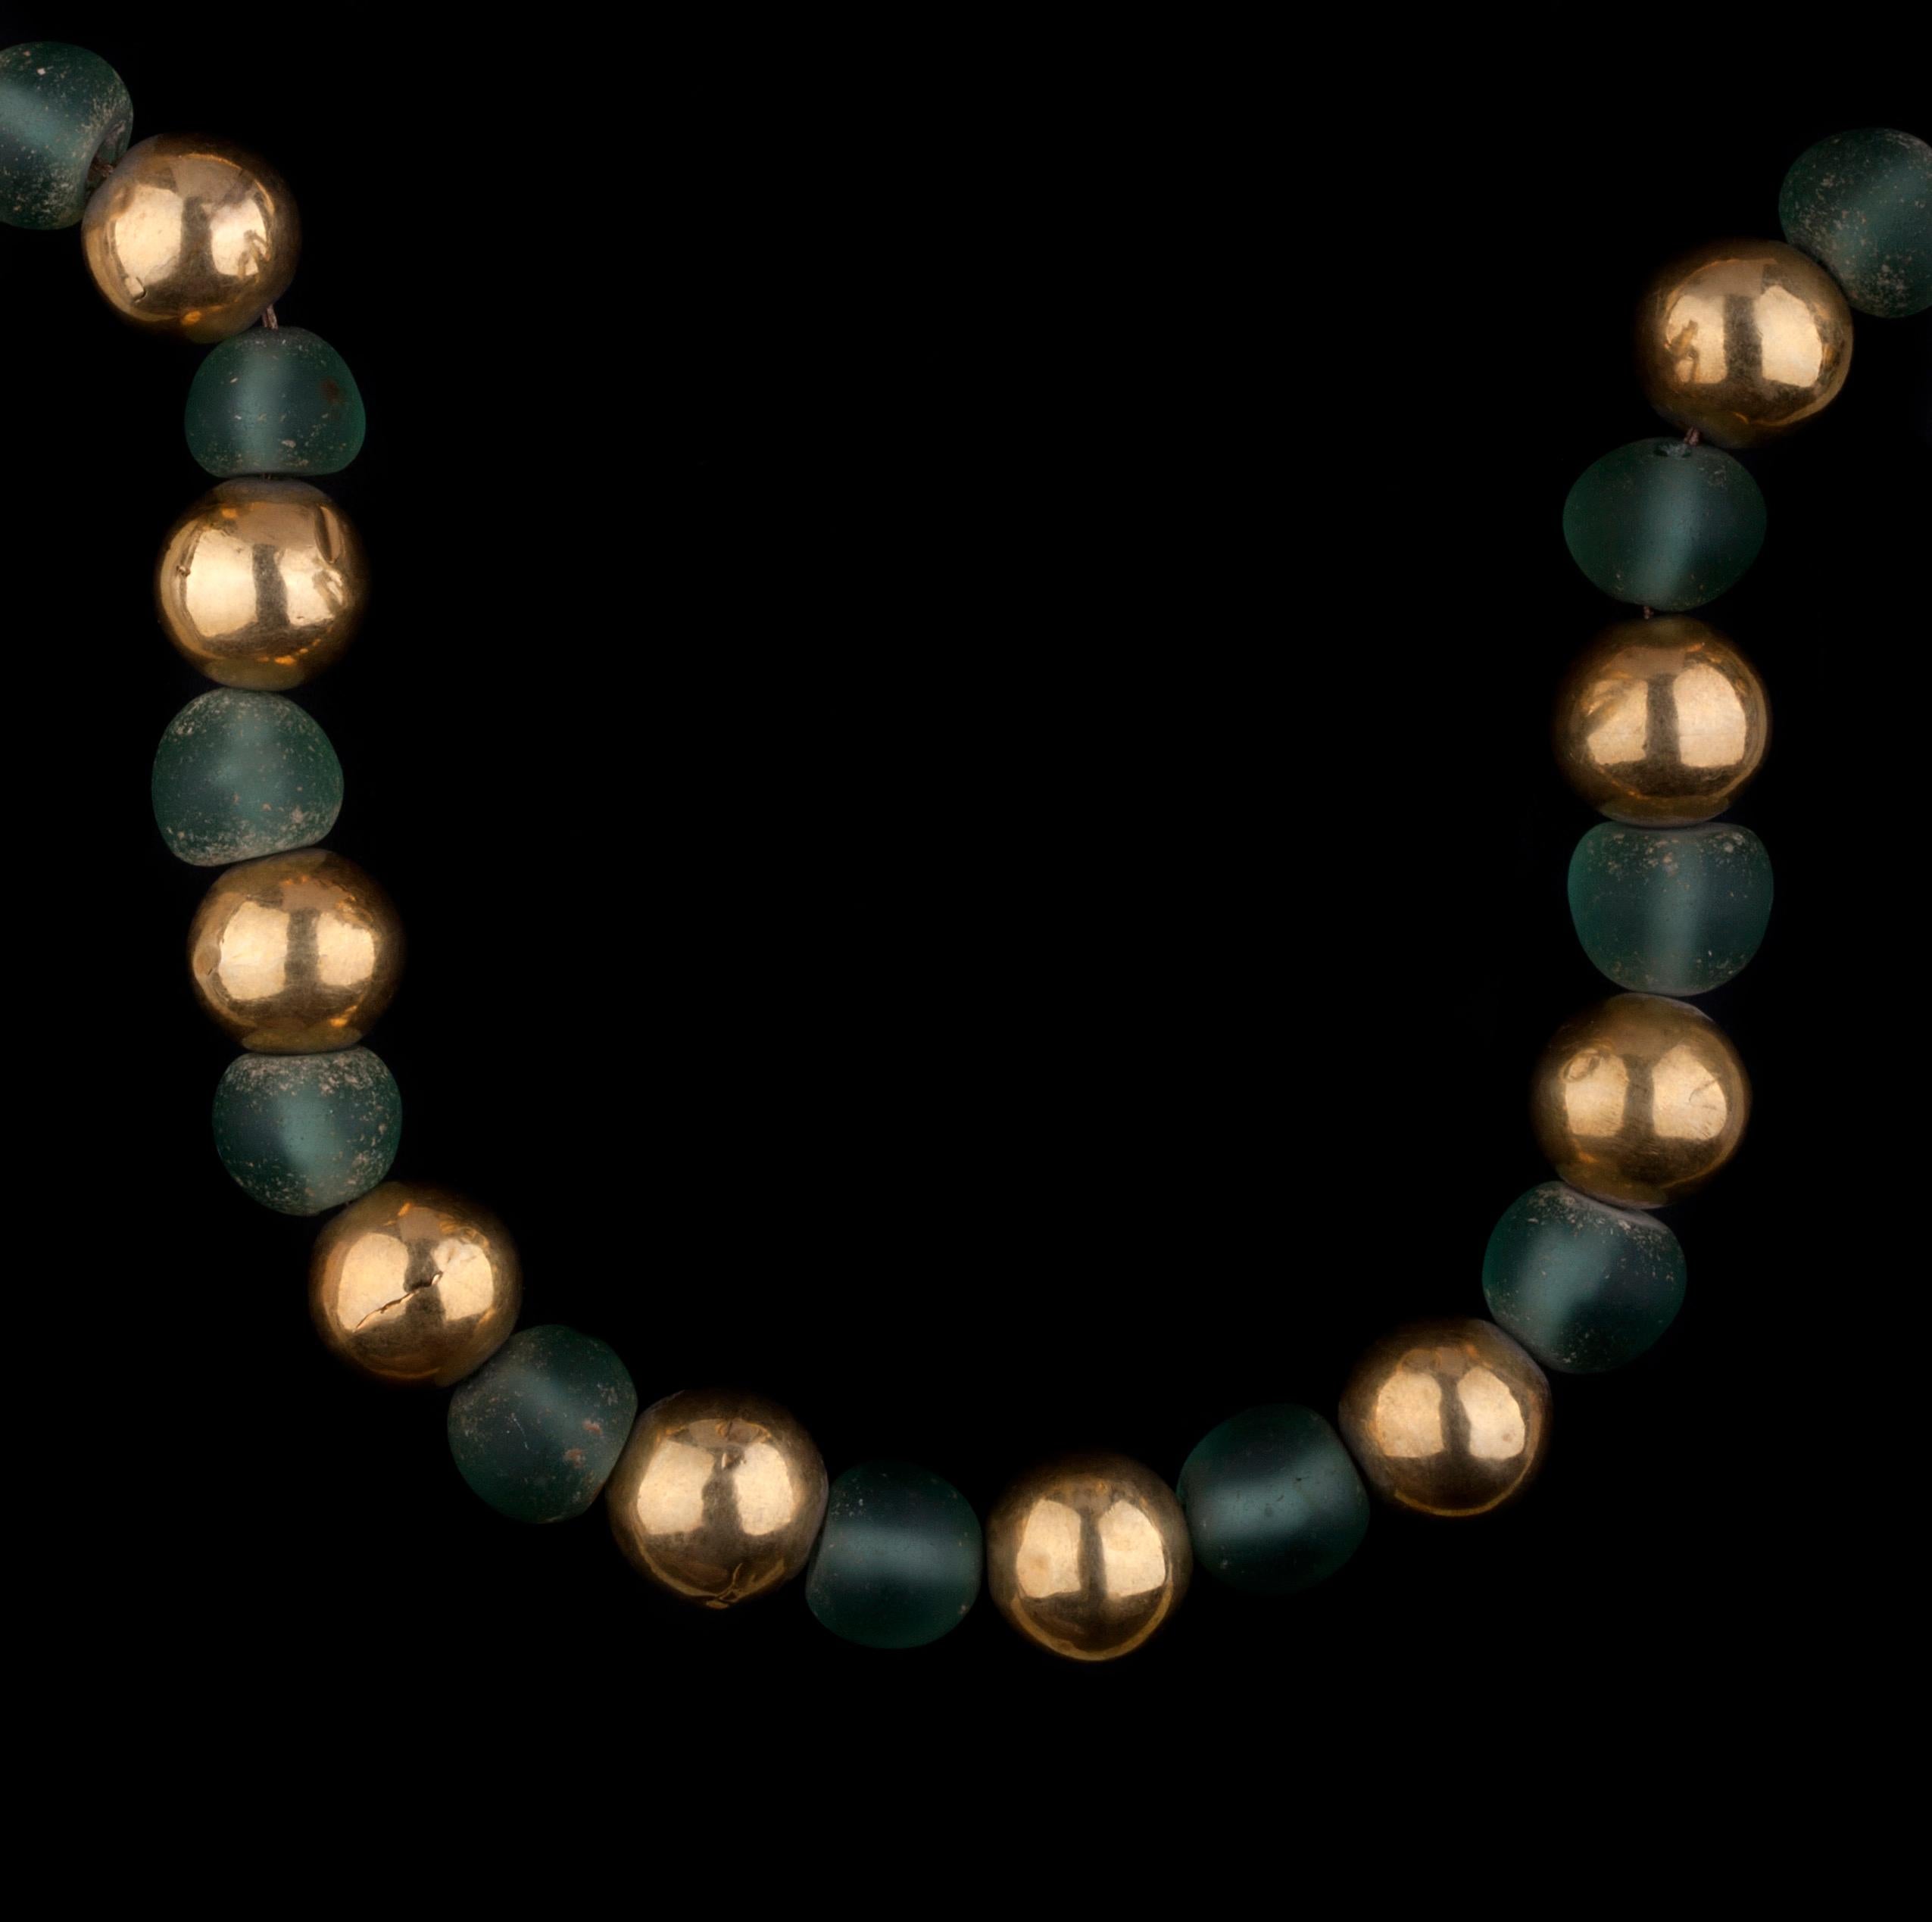 Un remarquable collier composé de perles anciennes en verre vert et en or jaune provenant d'une découverte archéologique.